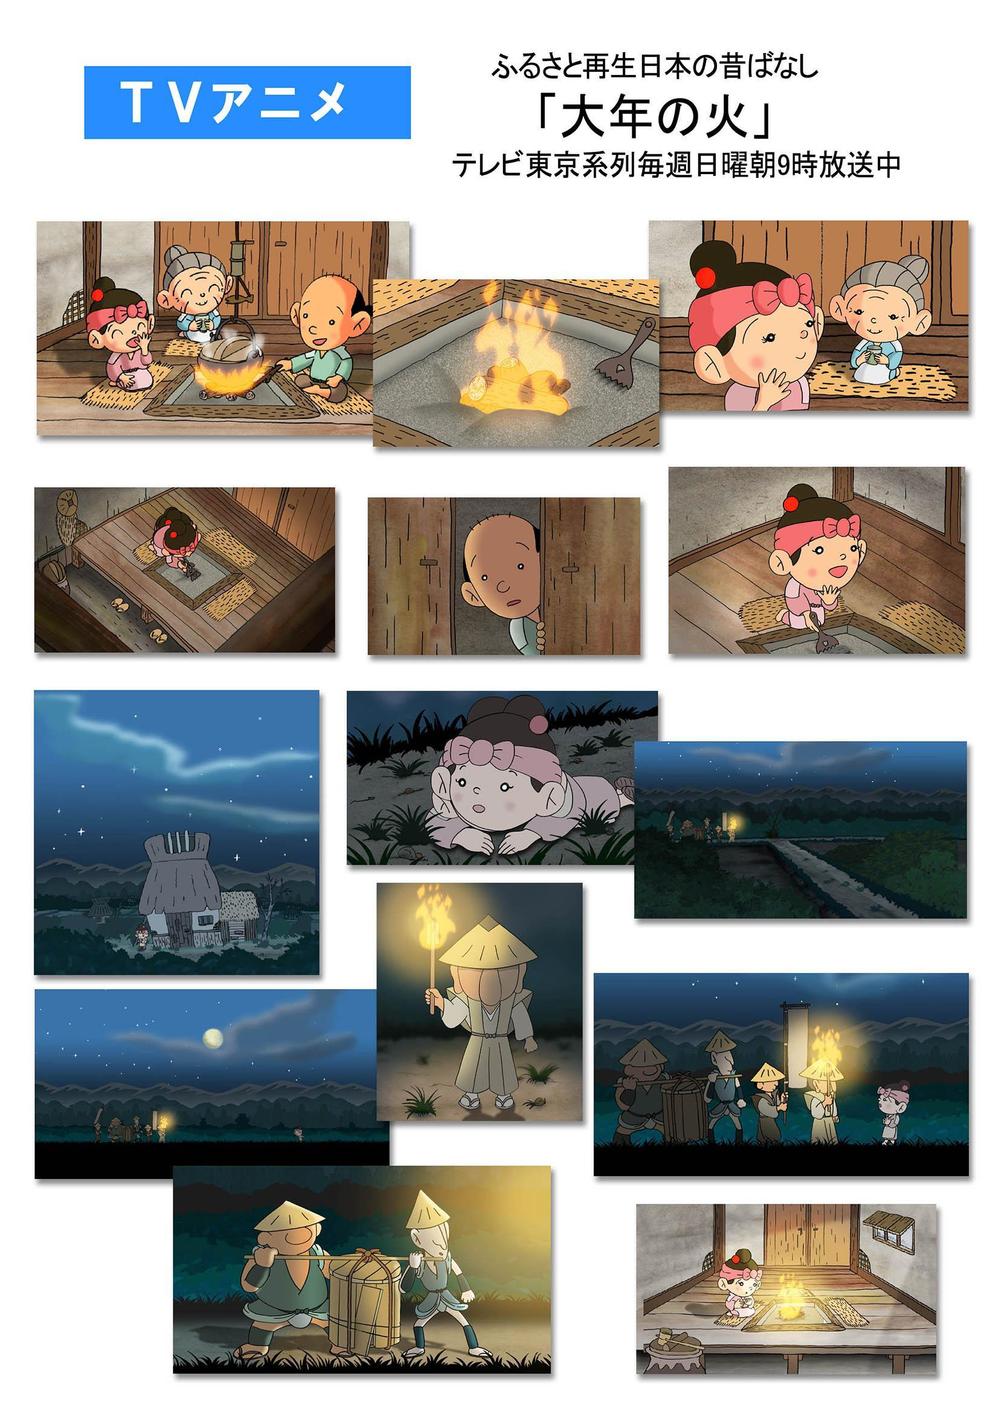 TVアニメ「ふるさと再生日本の昔ばなし」アニメーション制作 - ランサーズ